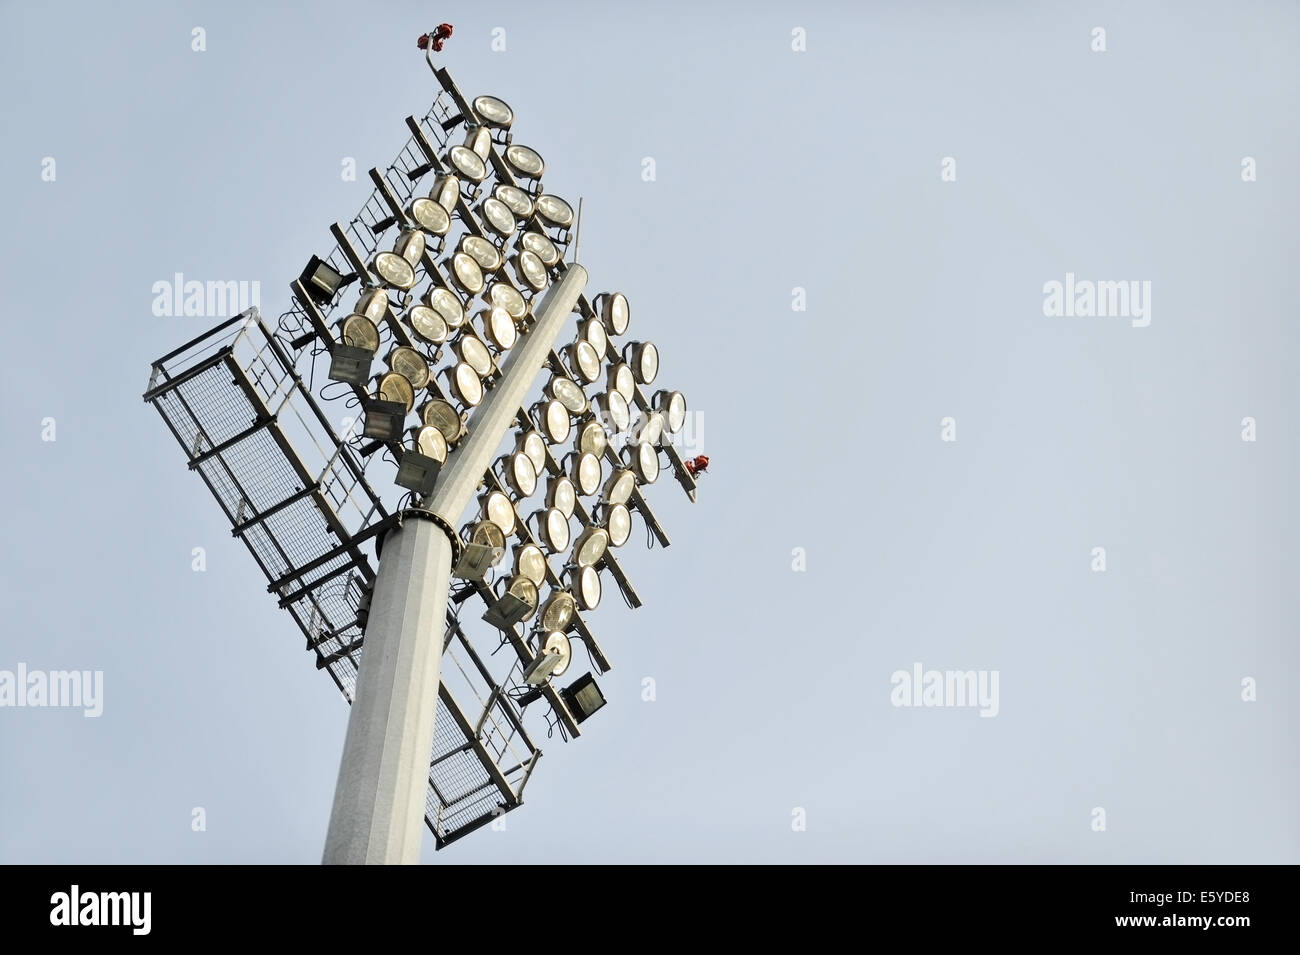 Football stadium floodlights are seen during daylight Stock Photo